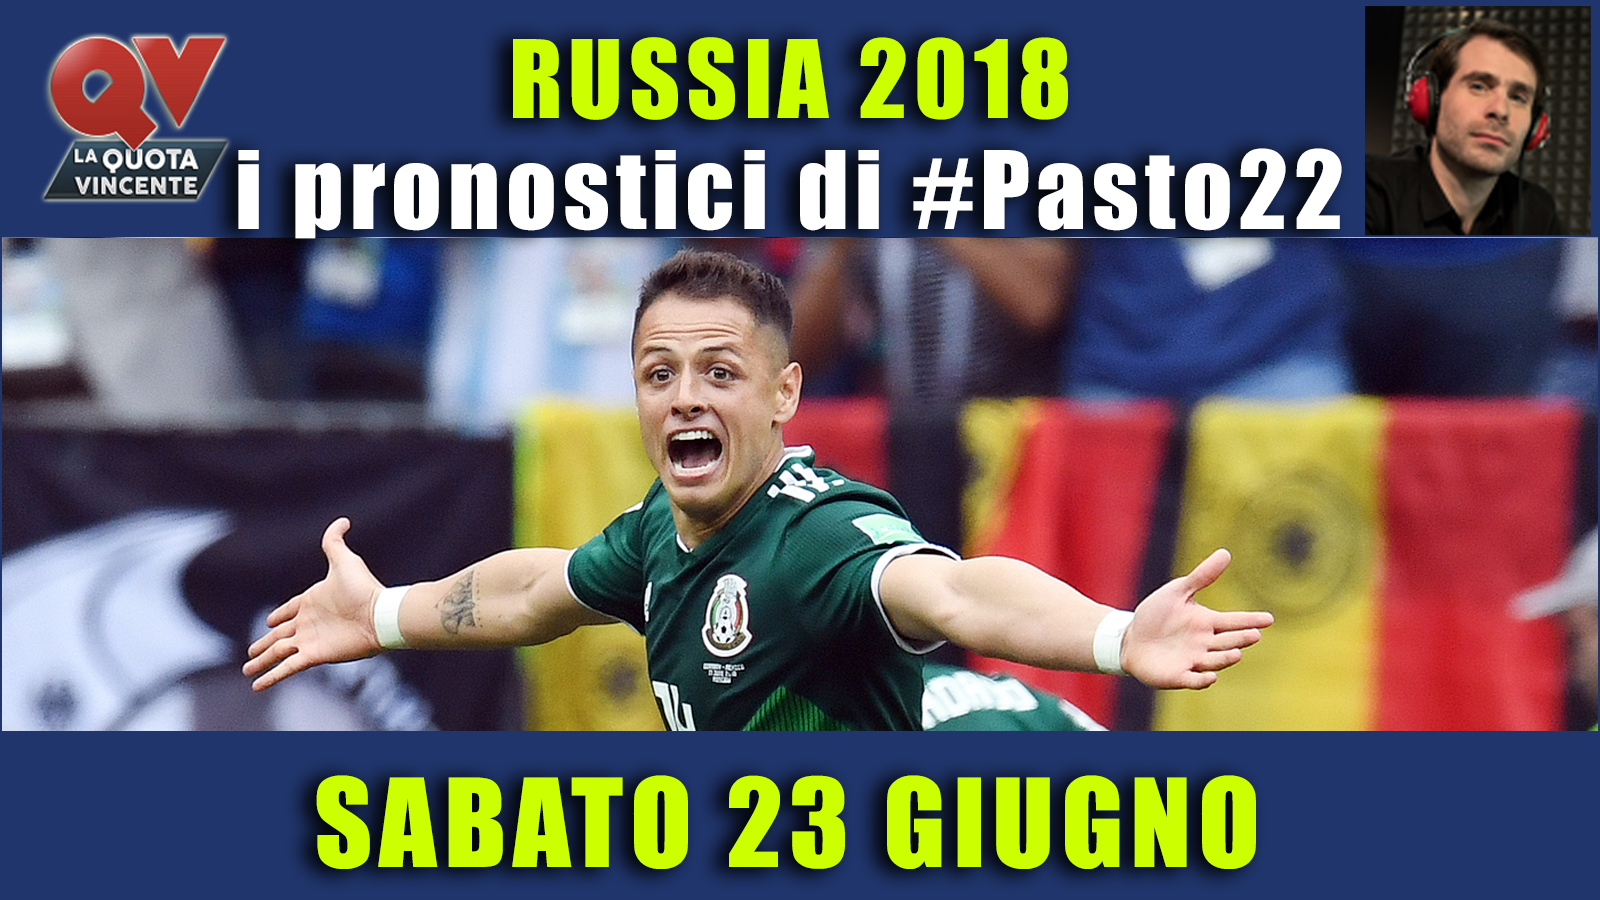 Pronostici Mondiali 23 giugno: le dritte di #Pasto22 a Russia 2018